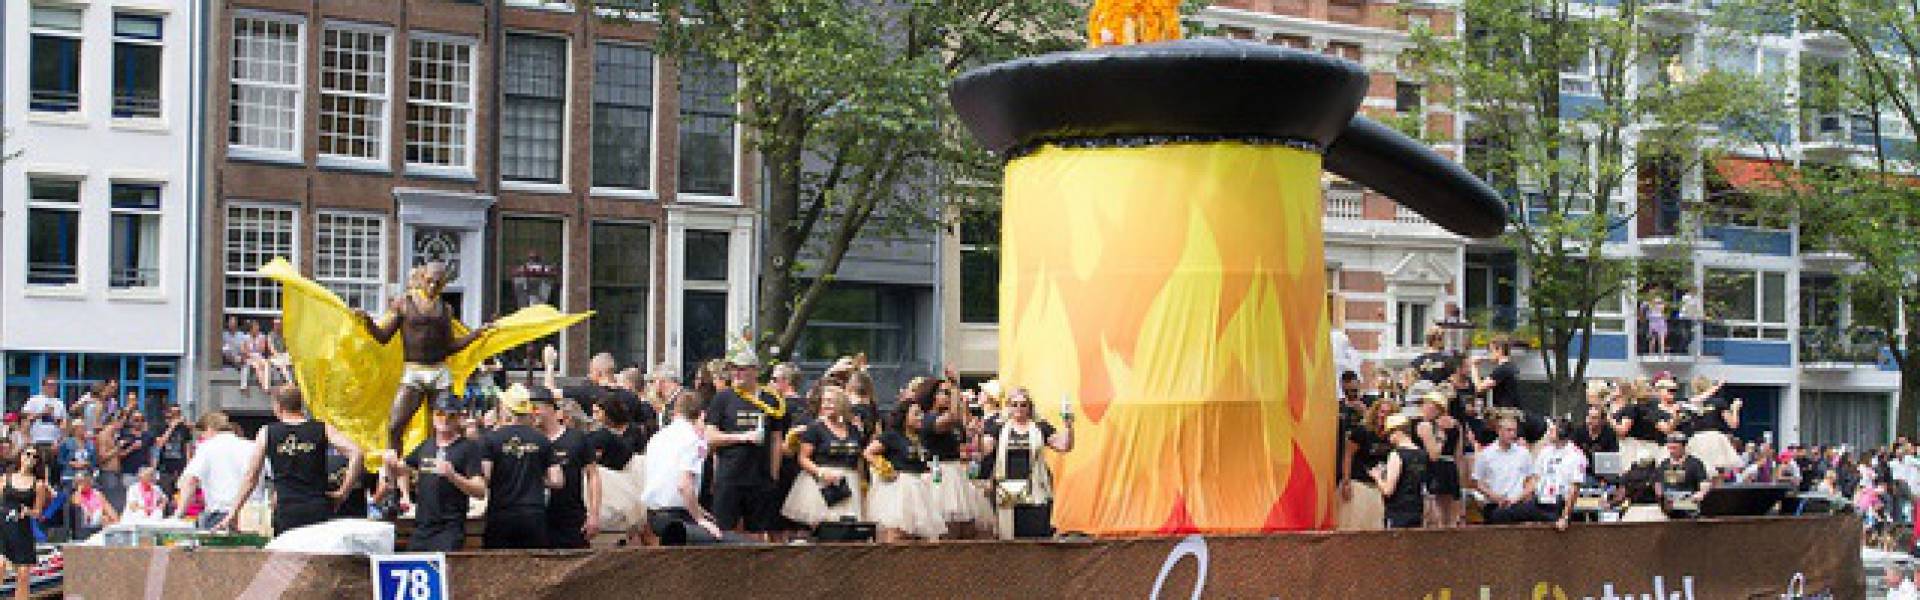 Gonflables géants comme matériel de promotion | X-Treme Creations Bateau naviguant sur le canal pendant la Gay Pride d'Amsterdam avec au dessus une gigantesque poêle à frire gonflable de 4m de diamètre qui se déplace de haut en bas avec des danseurs exotiques Loetje Steakhouse X-Treme Creations